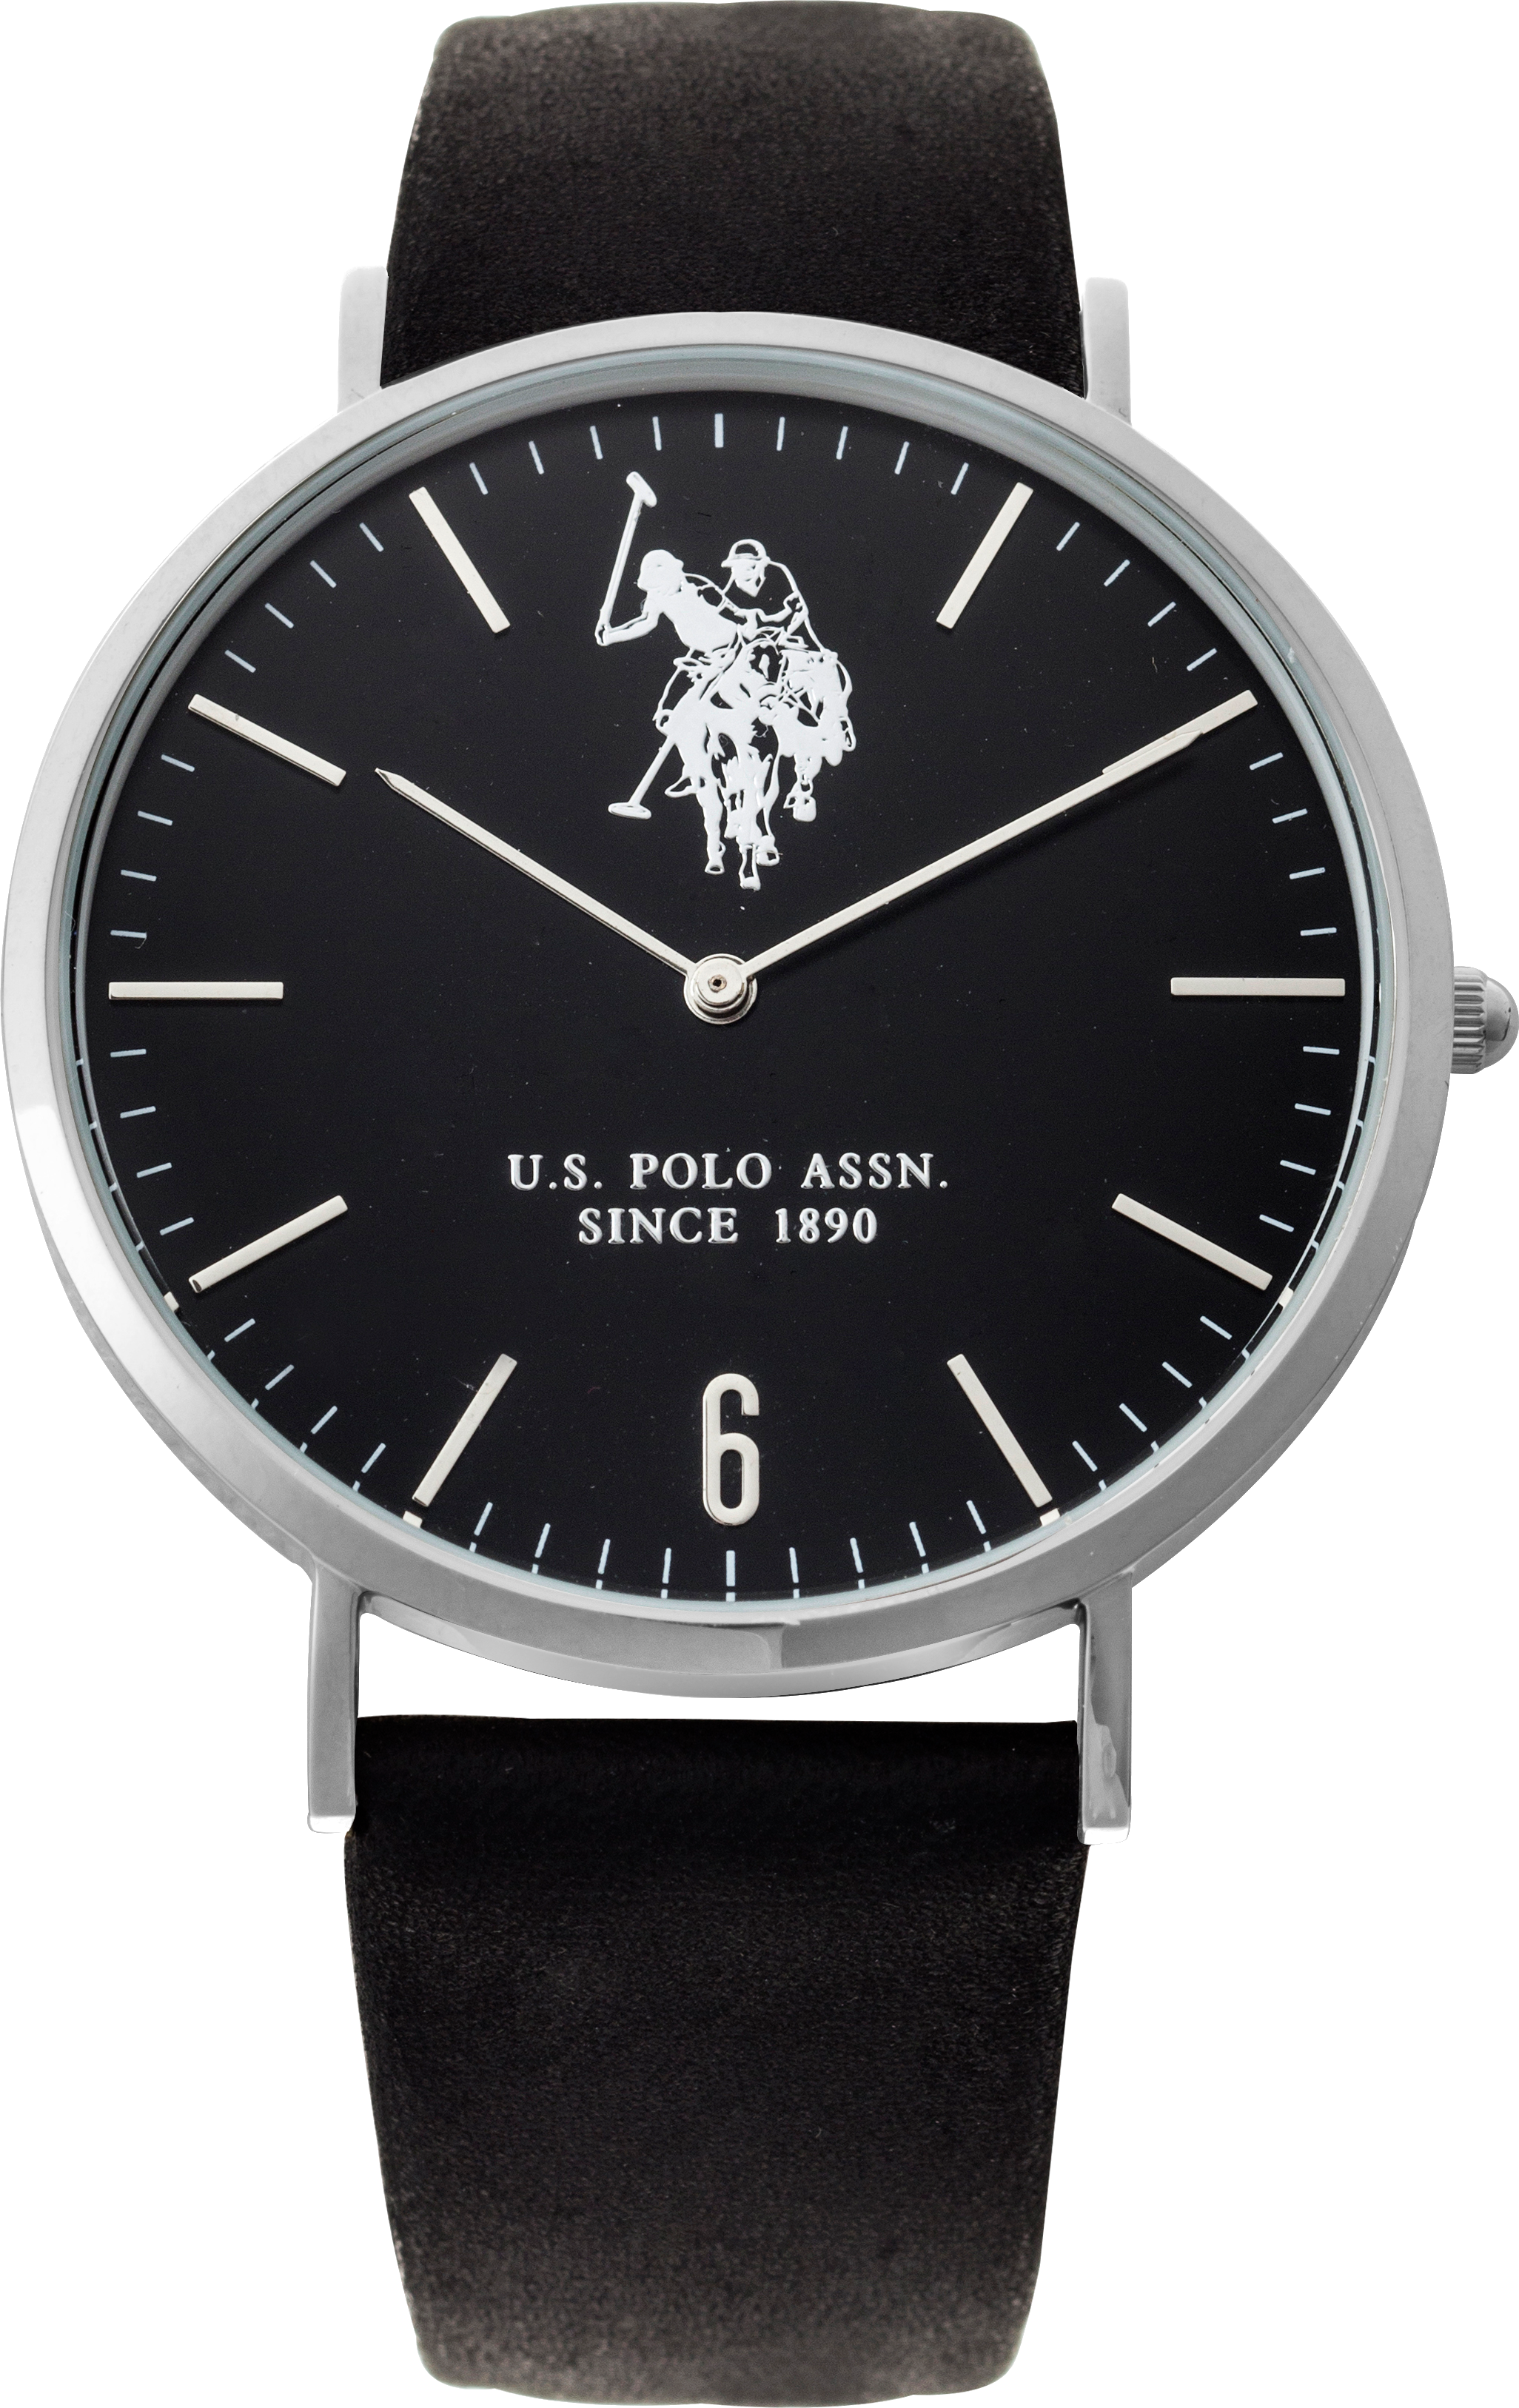 Us Polo Assn часы мужские. Часы u.s. Polo Assn мужские. Часы us Polo Assn. Часы u.s. Polo Assn женские 1890.